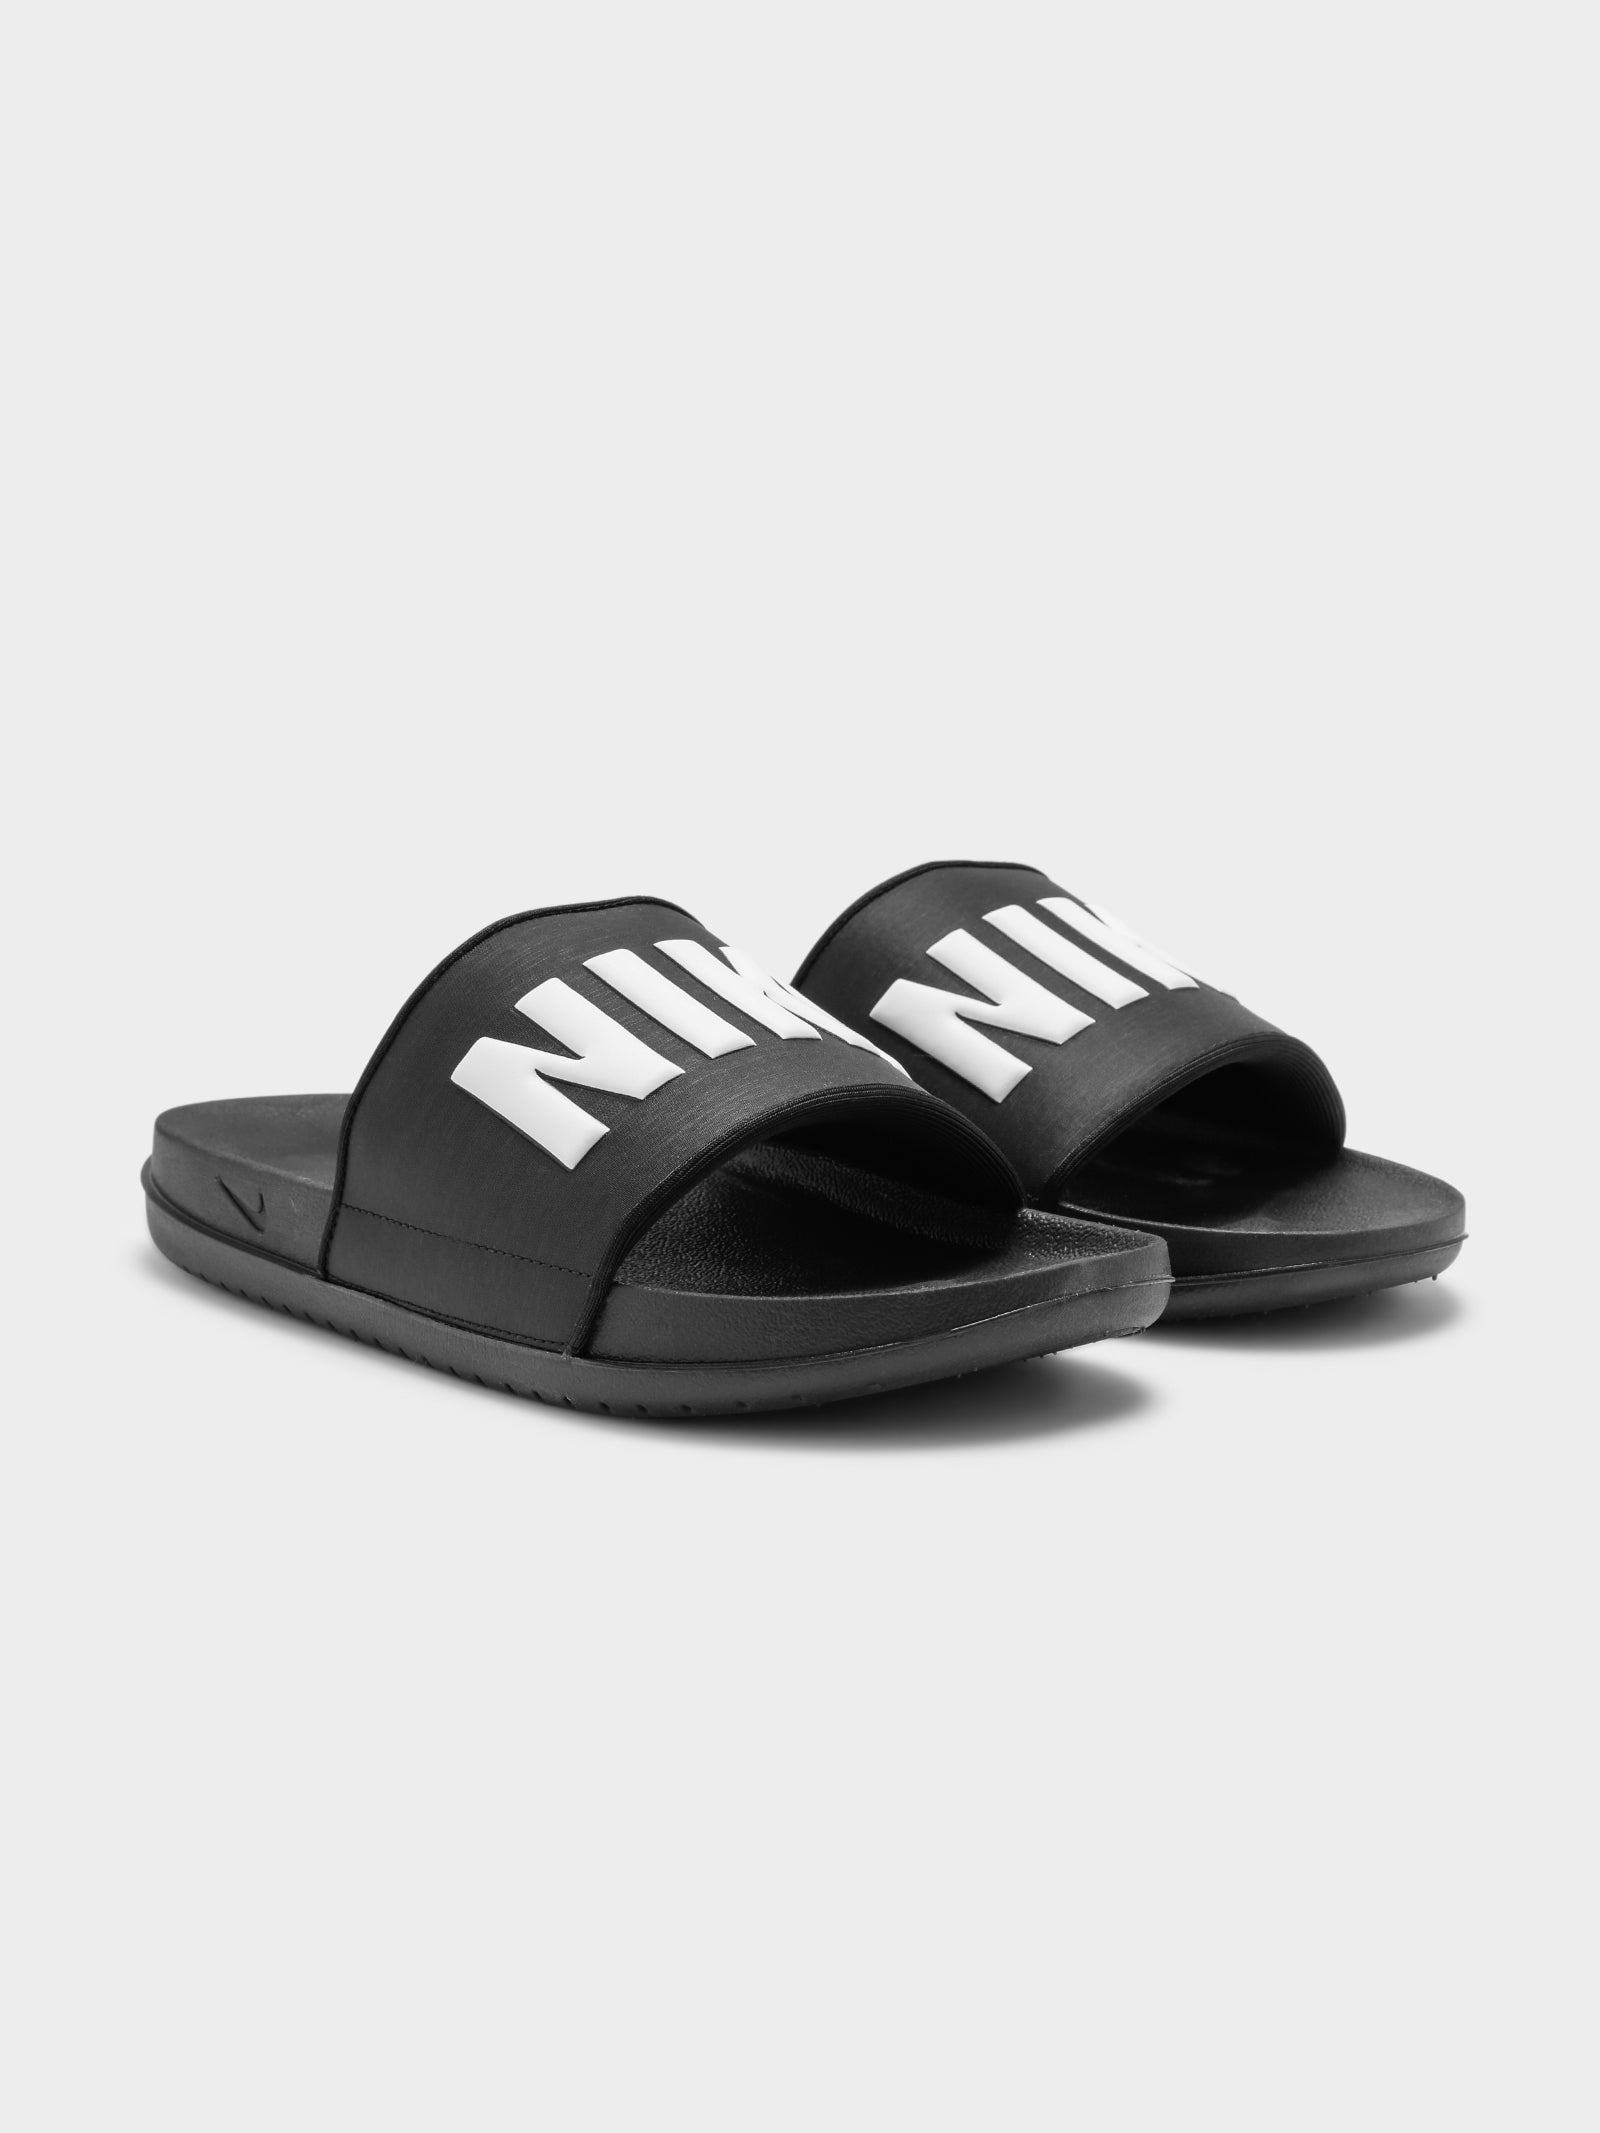 Mens Nike Offcourt Slides in Black & White